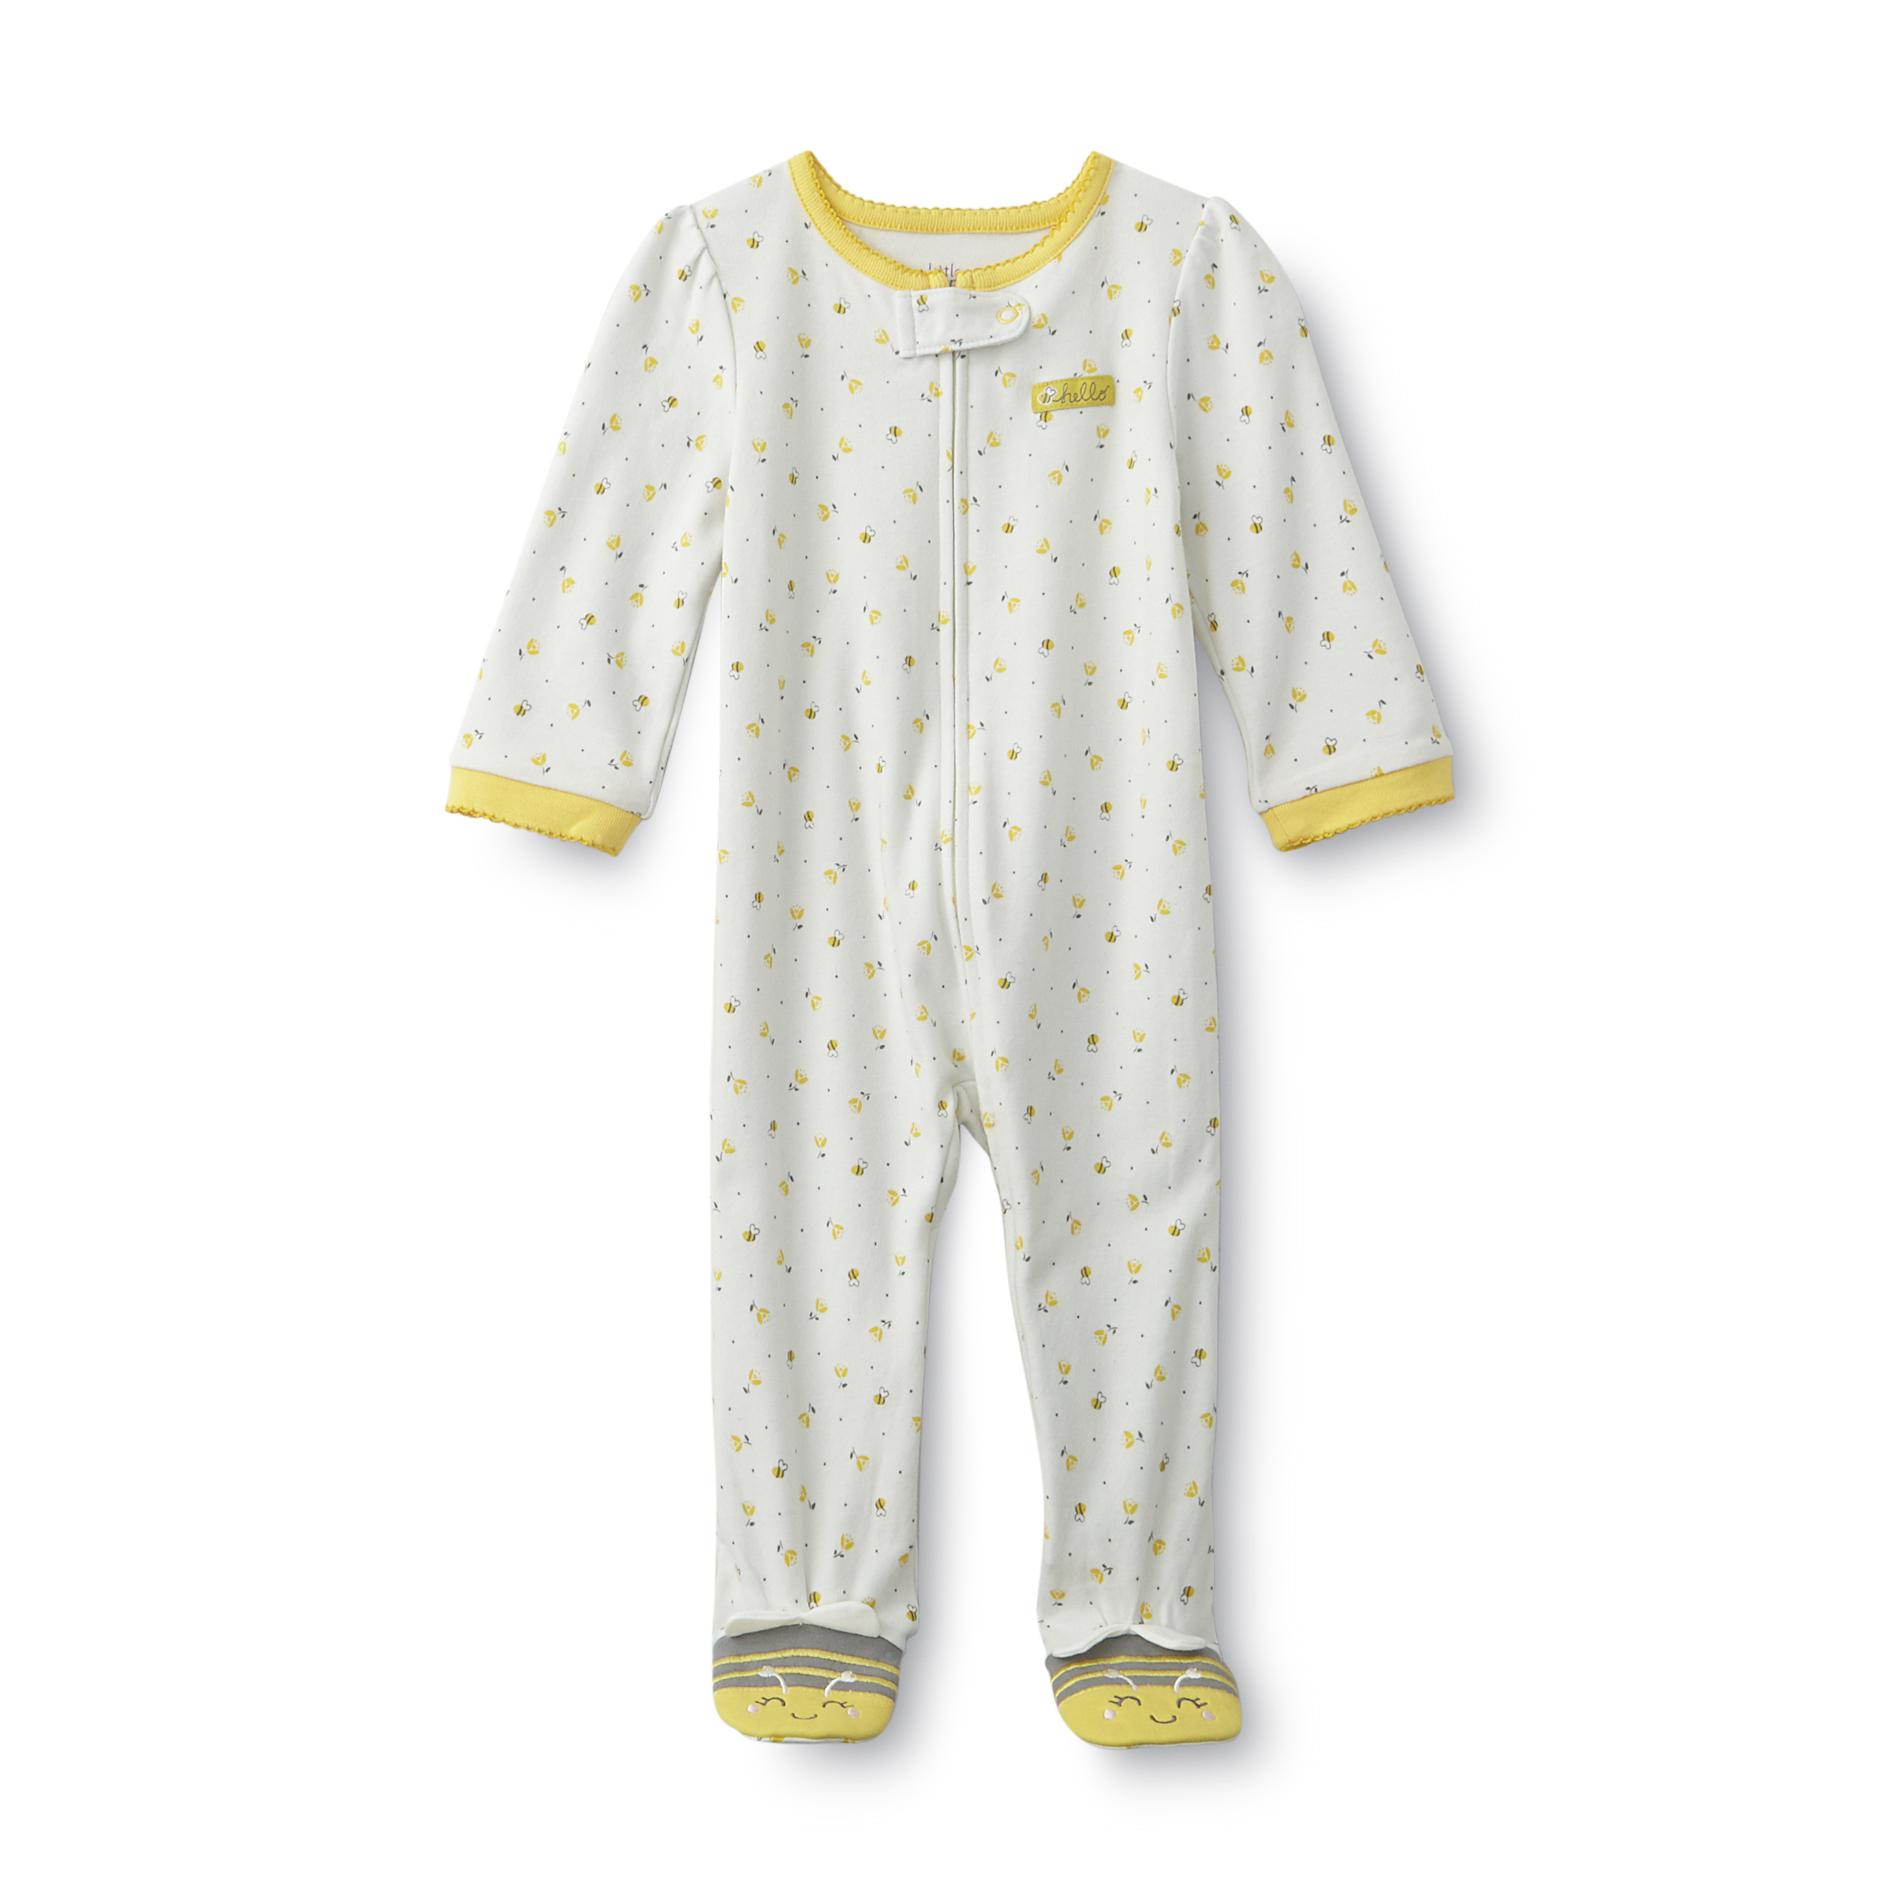 Little Wonders Newborn Girl's Footed Pajamas - Flowers & Bees